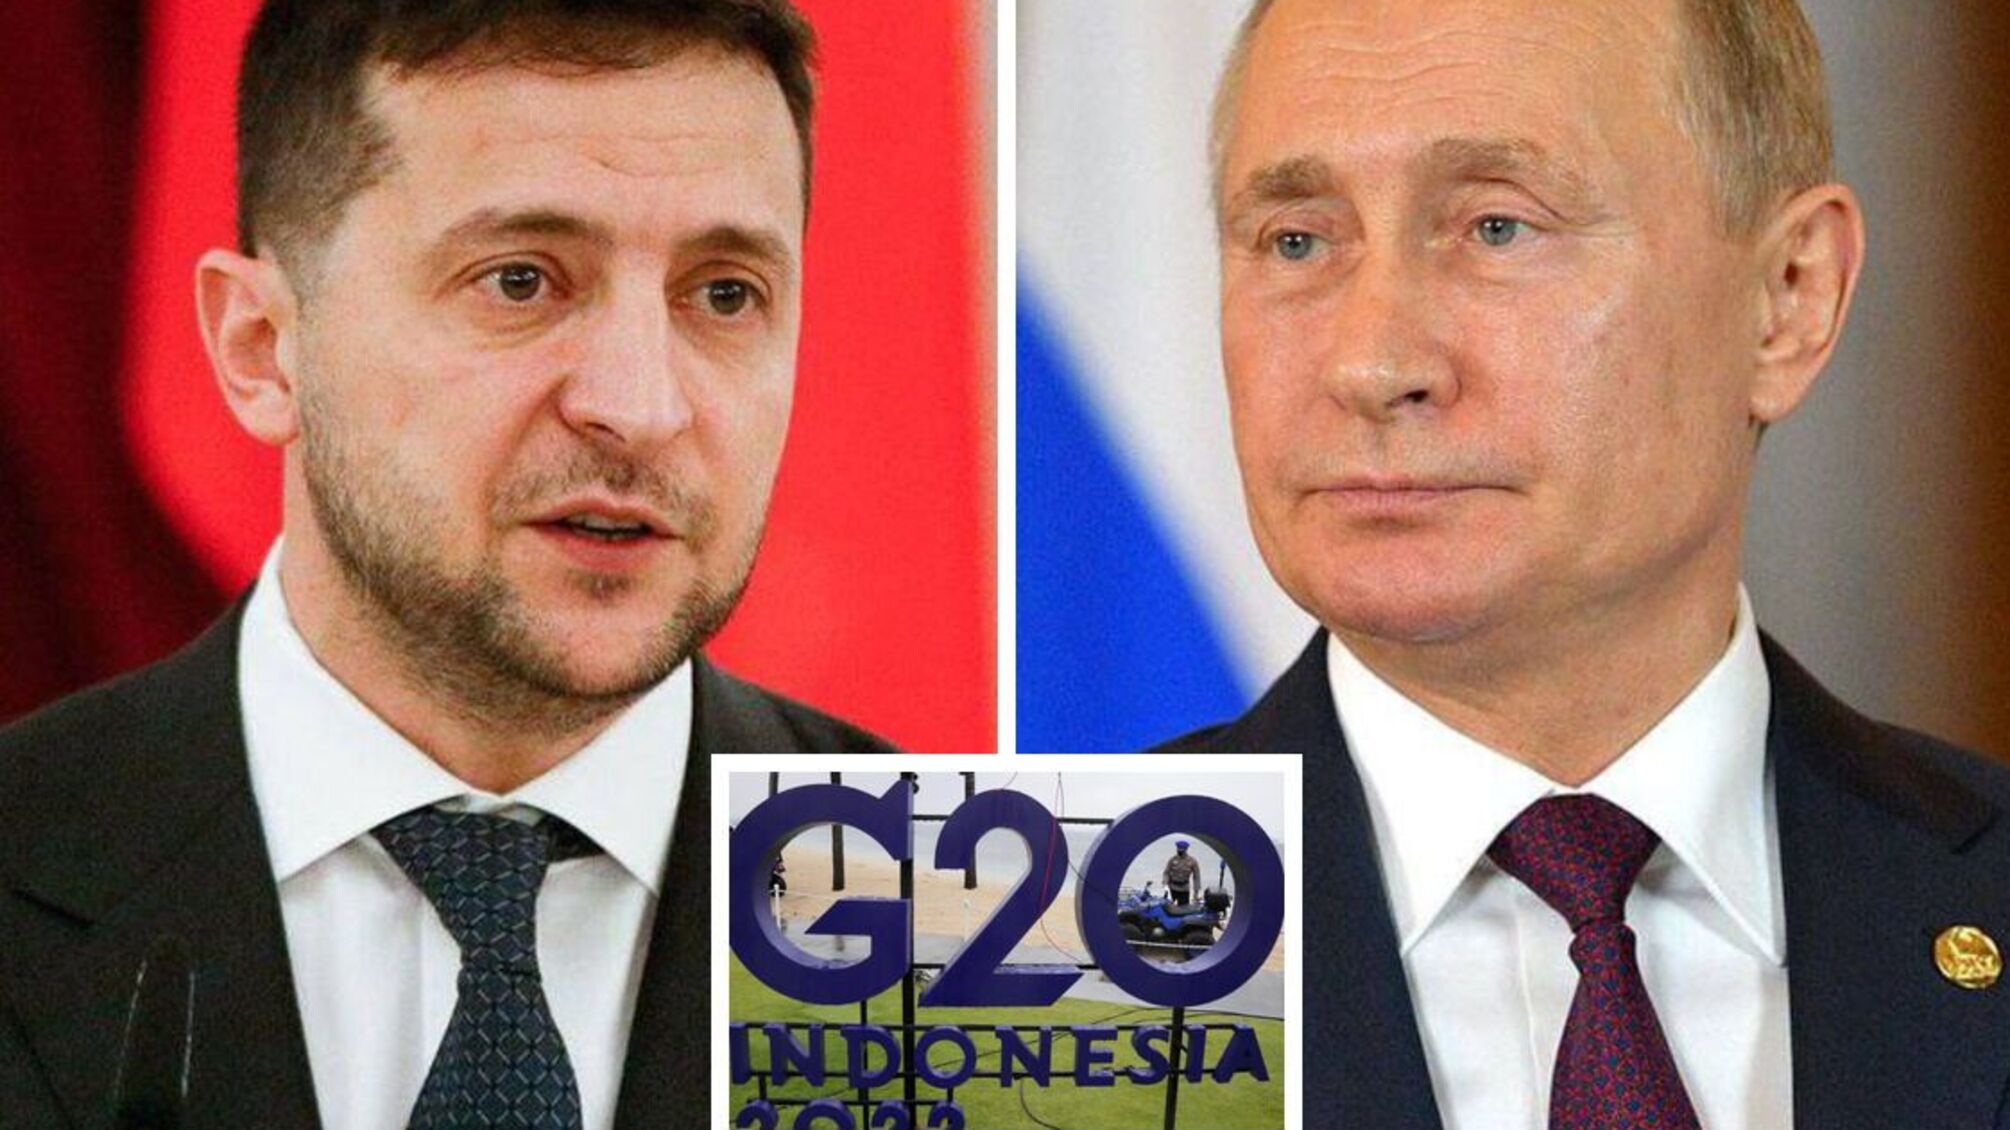 Зеленський і путін зустрінуться на G20, - підтверждує МЗС Індонезії